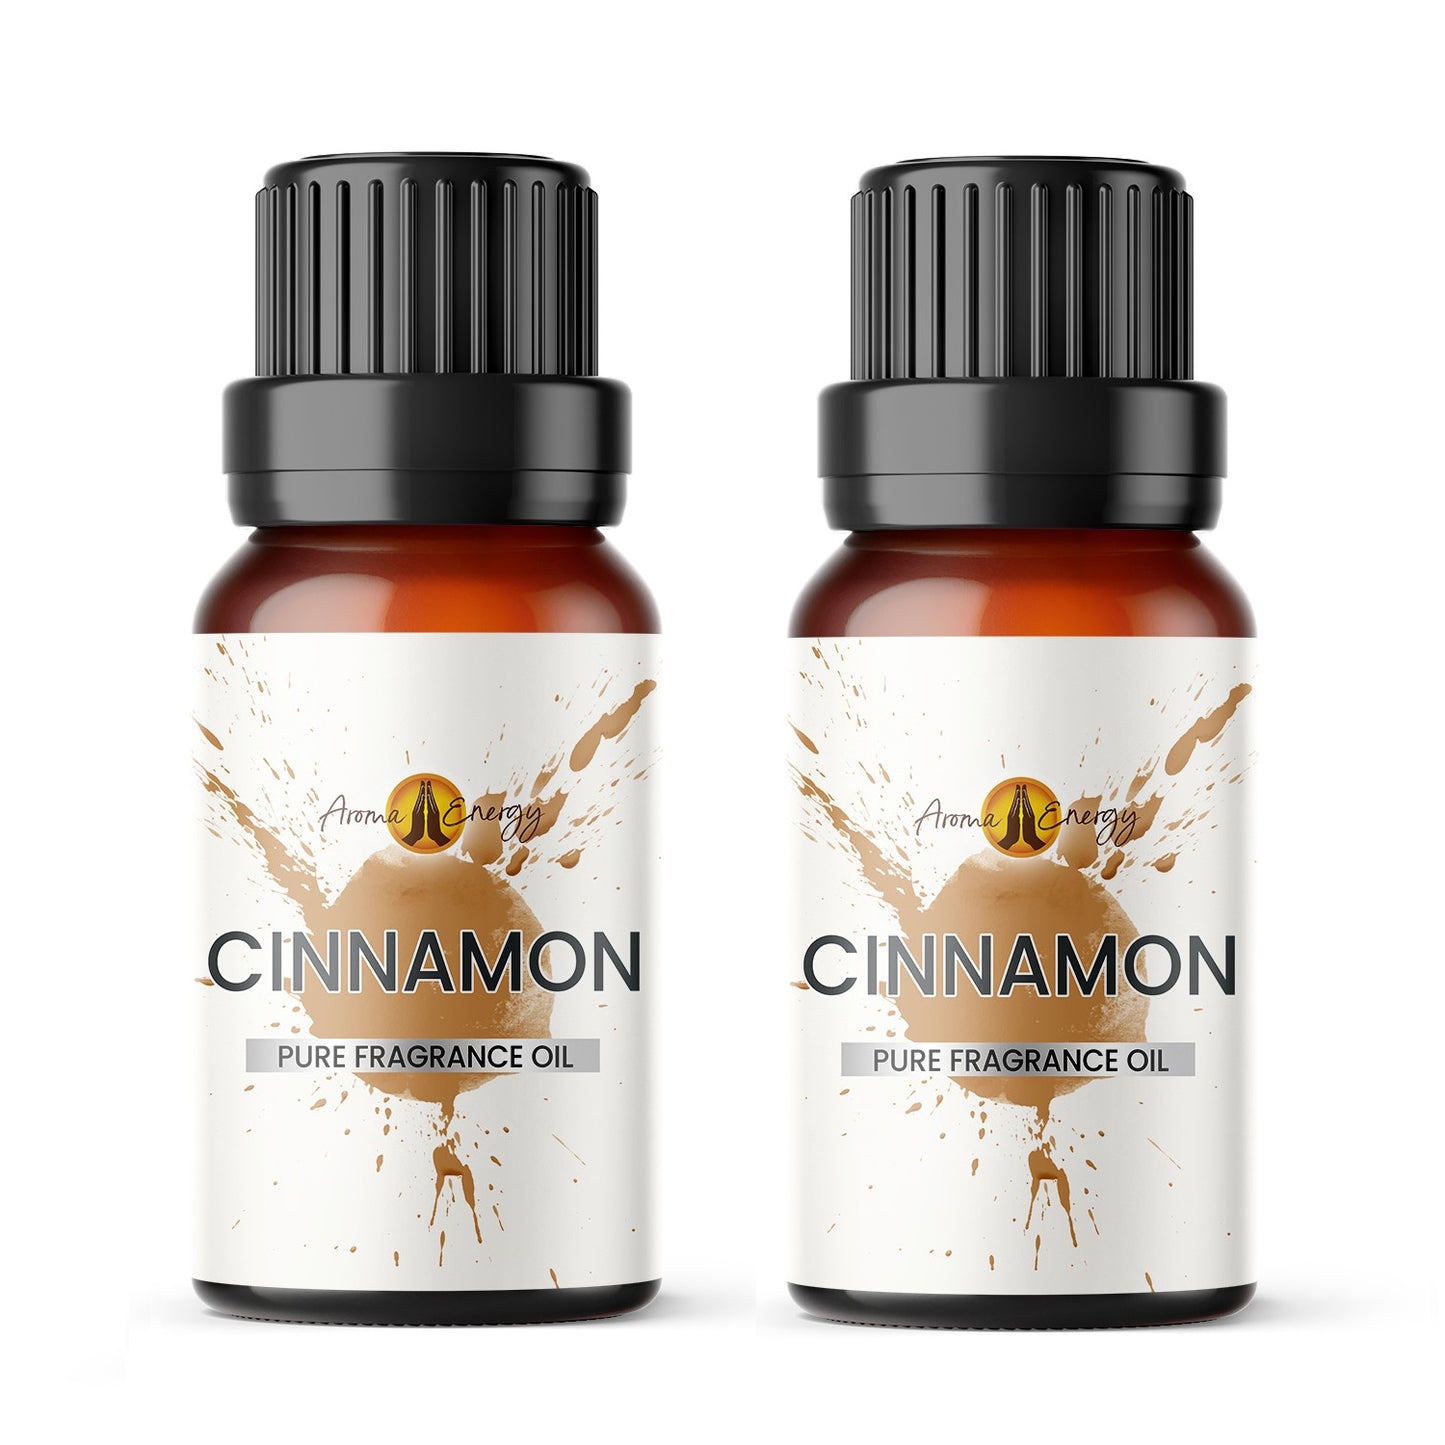 Cinnamon Fragrance Oil - Aroma Energy